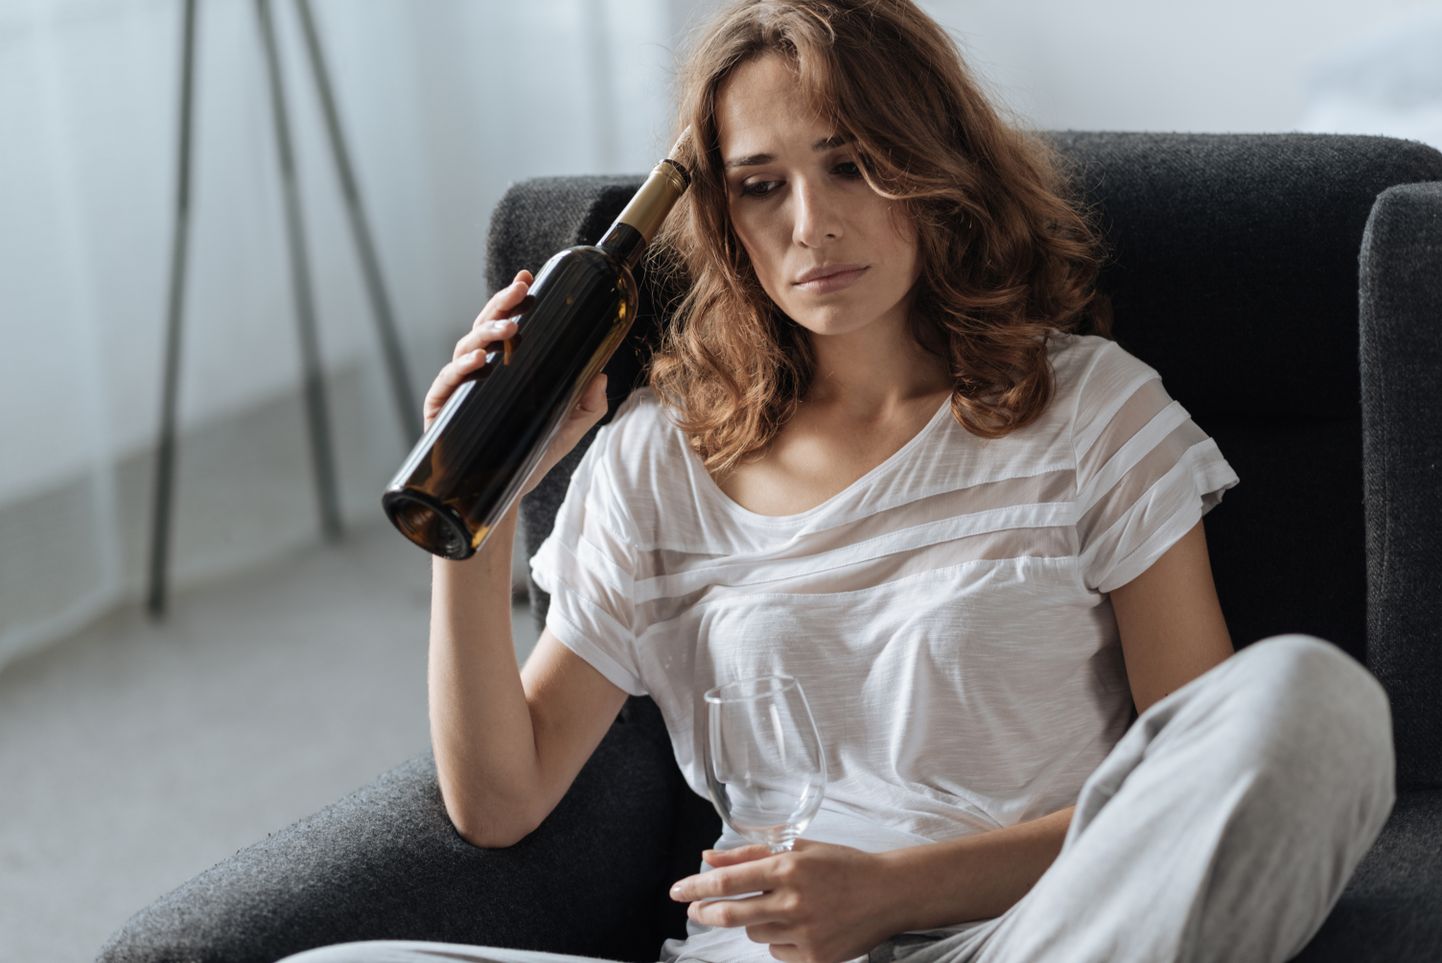 Naised taluvad alkoholi halvemini kui mehed. Naistel on kõrgem rasvaprotsent. Rasv aitab alkoholil püsida kauem organismis. Samuti on kehas kõrgema rasvasisalduse korral vähem vett ja alkohol lõhustub seetõttu aeglasemalt. Pilt on illustratiivne.